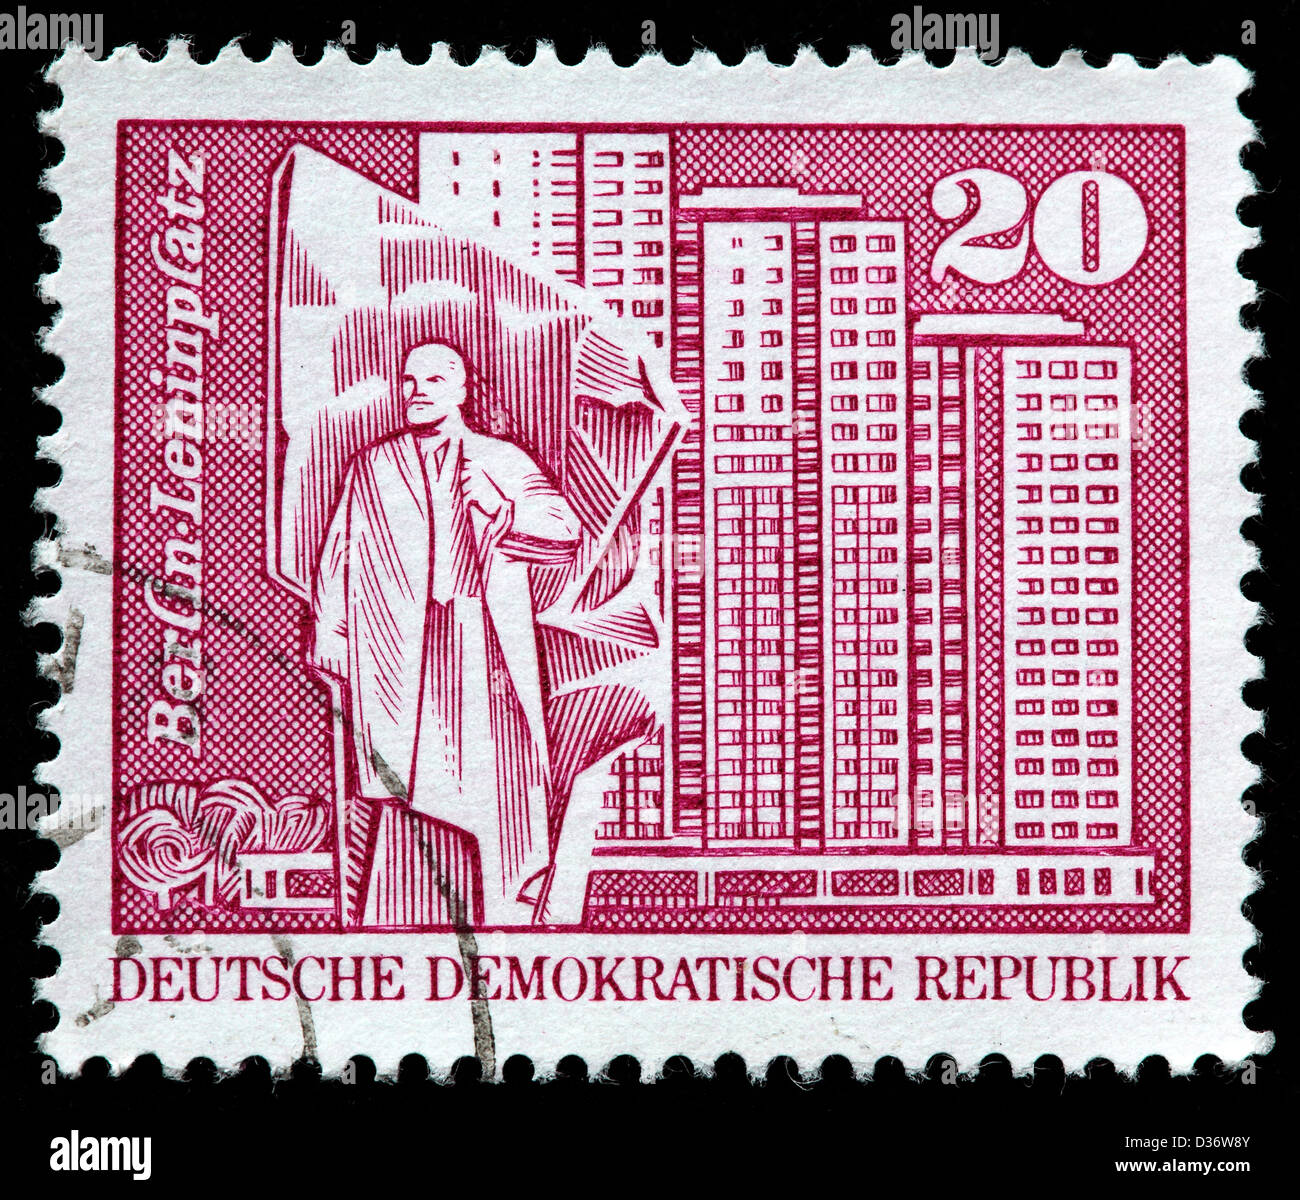 Lenin Square, Berlin, timbre-poste, Allemagne, 1973 Banque D'Images